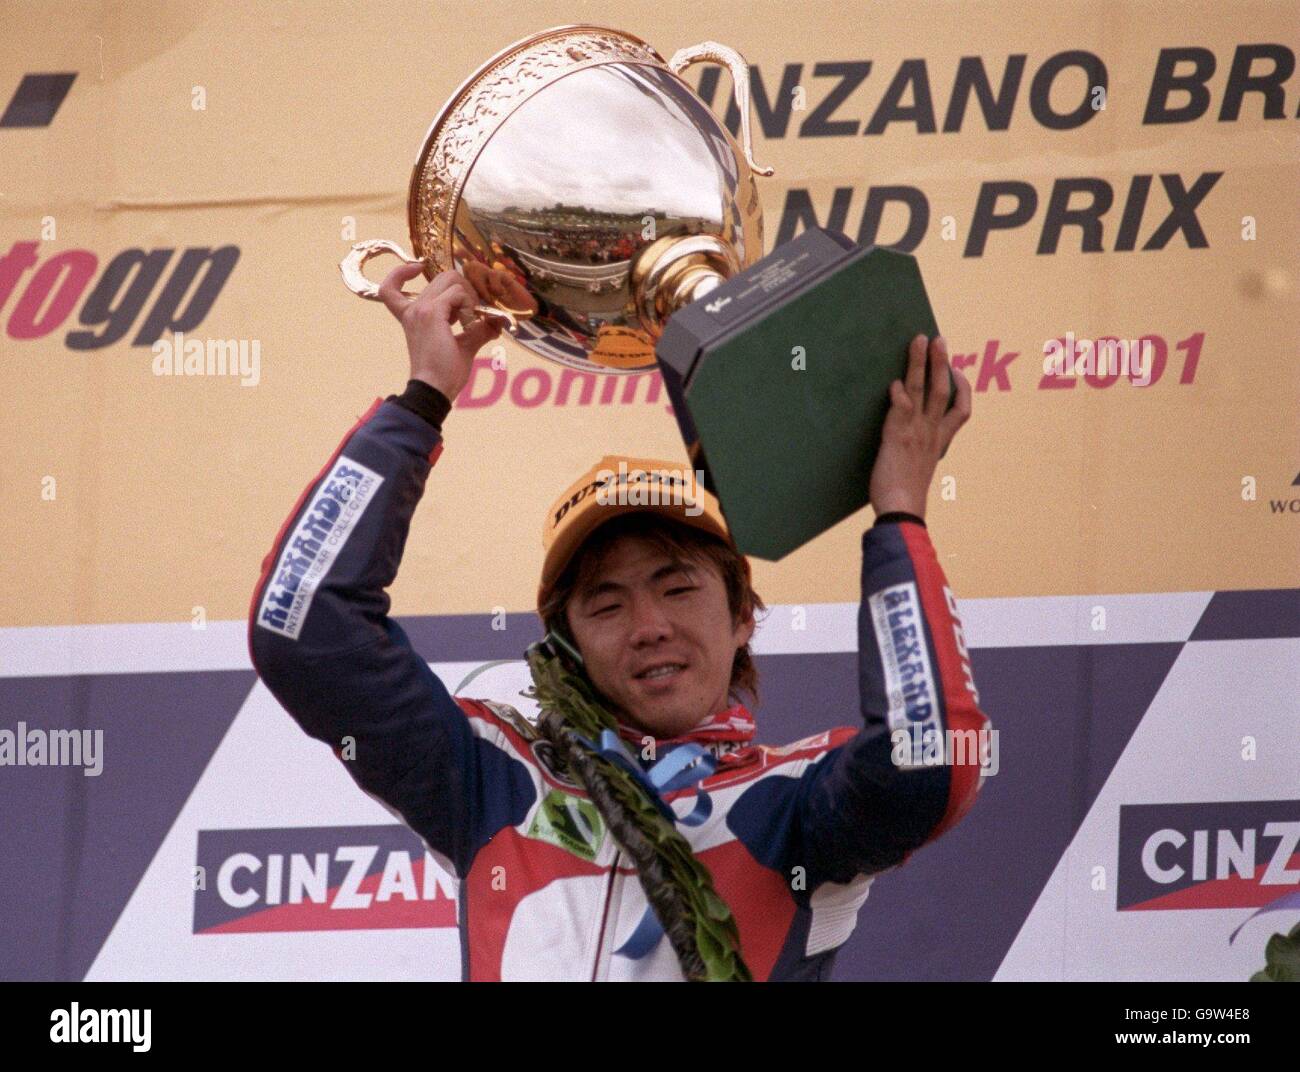 Motor Racing - Campionato Mondiale Super Bike - Cinzano Gran Premio di Gran Bretagna - Donington. Japans Daijiro Katoh festeggia la vittoria del Gran Premio 250cc Foto Stock